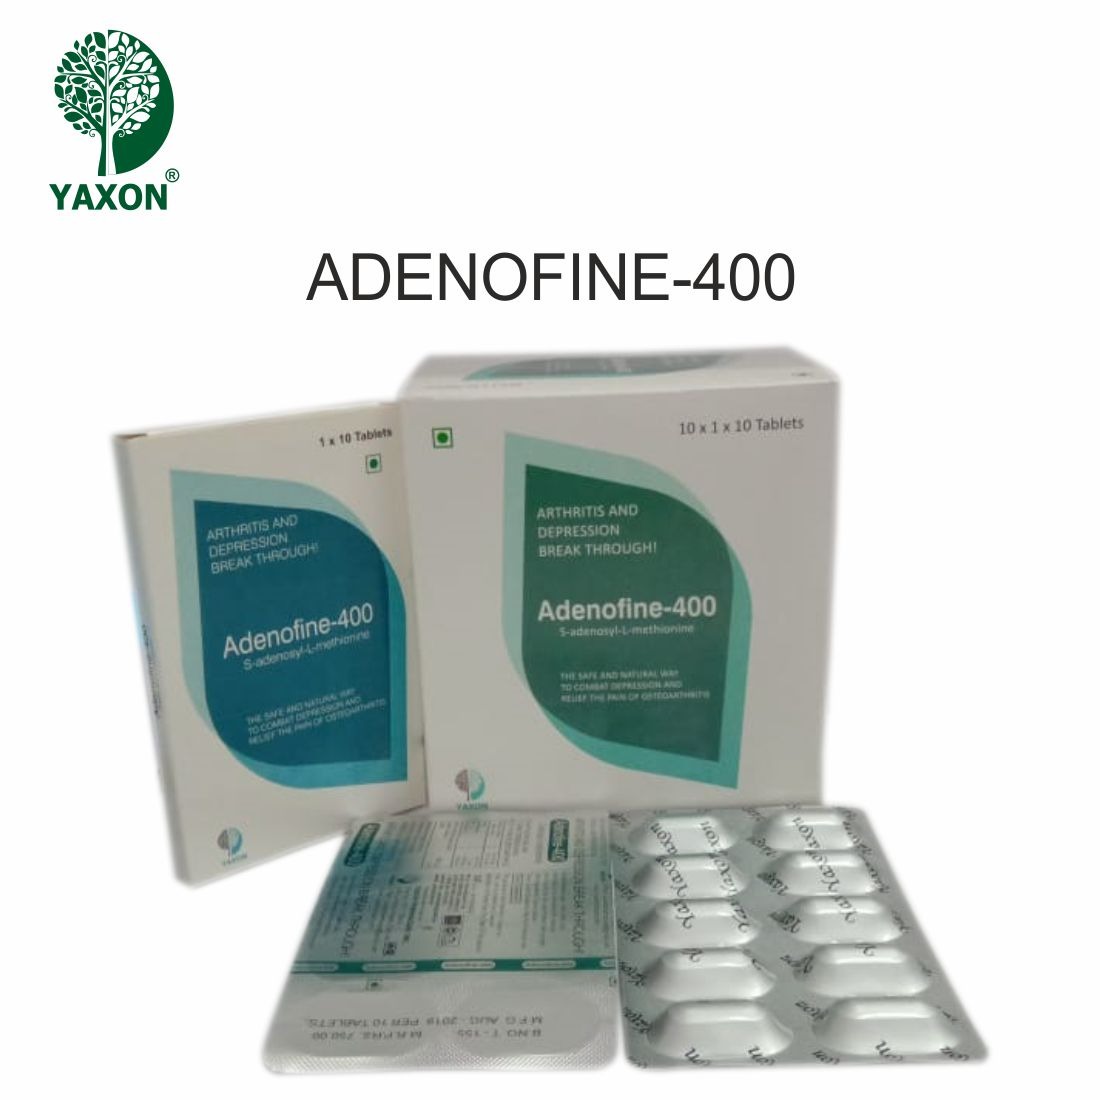 YAXON ADENOFINE 400 Tablets